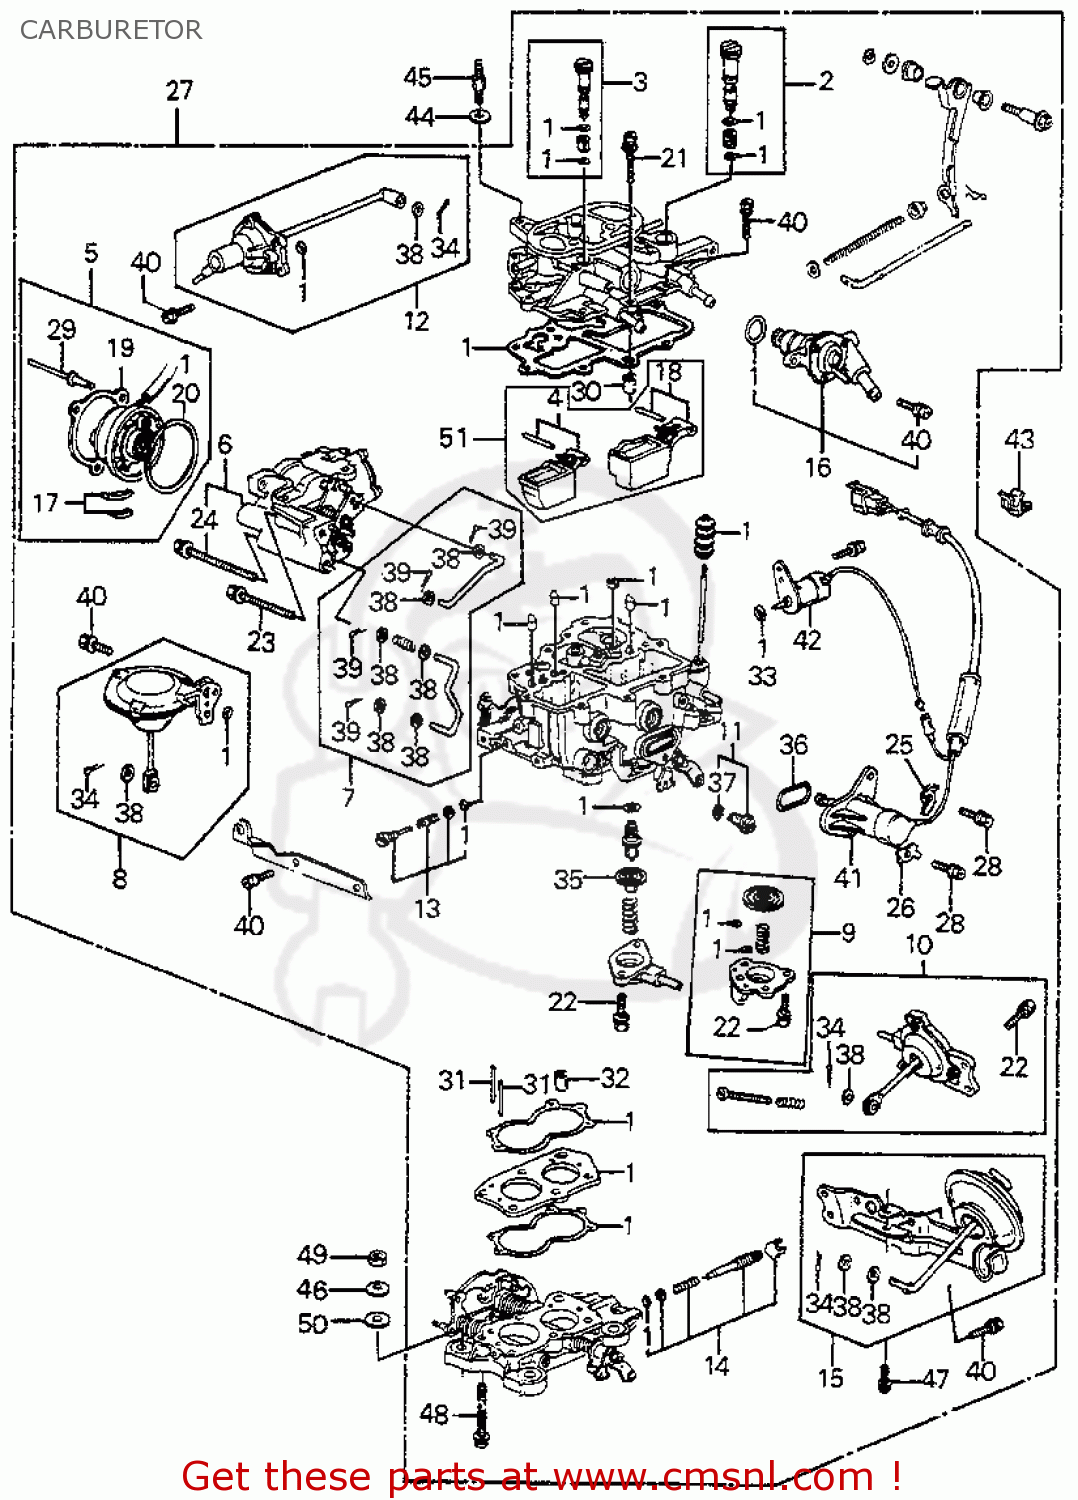 1985 Accord carburetor honda #1